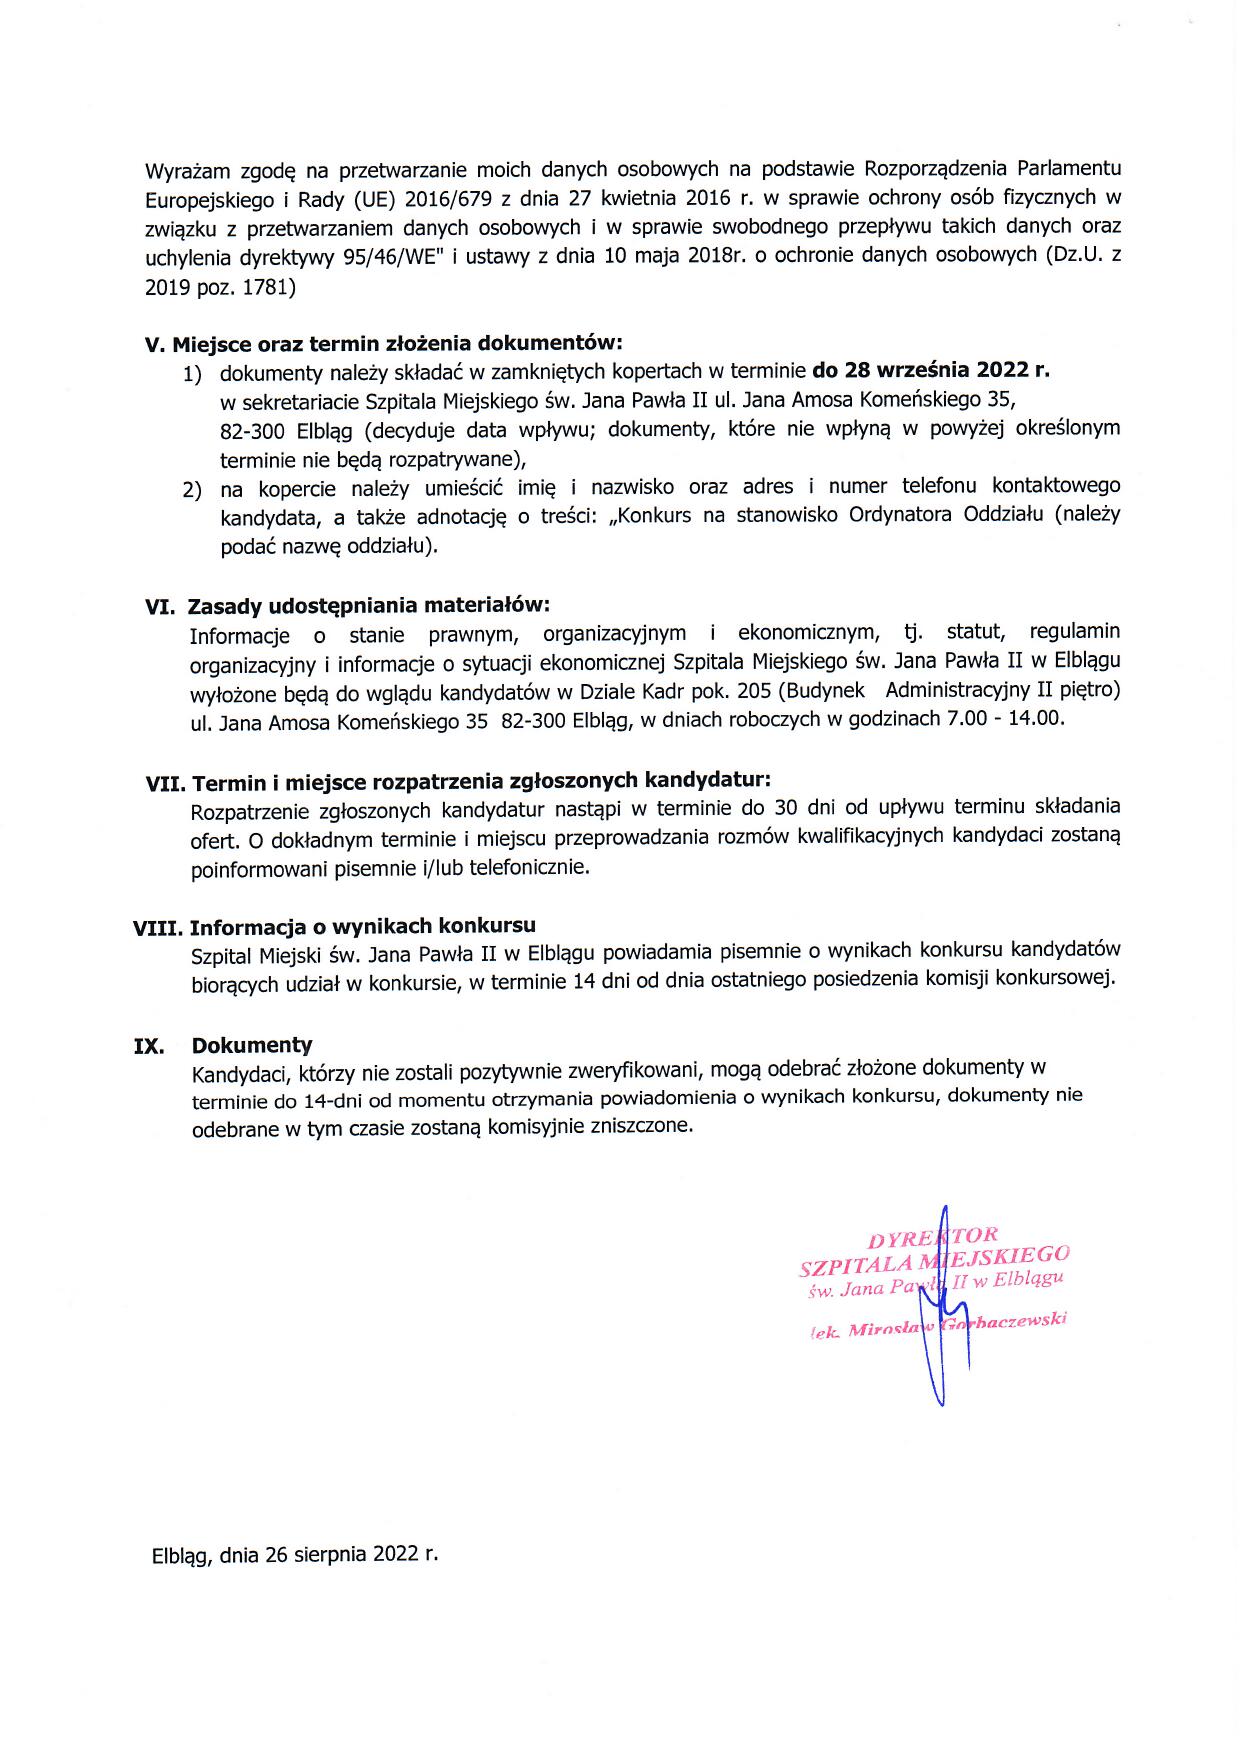 Ogłoszenie o konkursie na stanowisko Ordynatora Oddziału Chirurgii Dziecięcej cz2